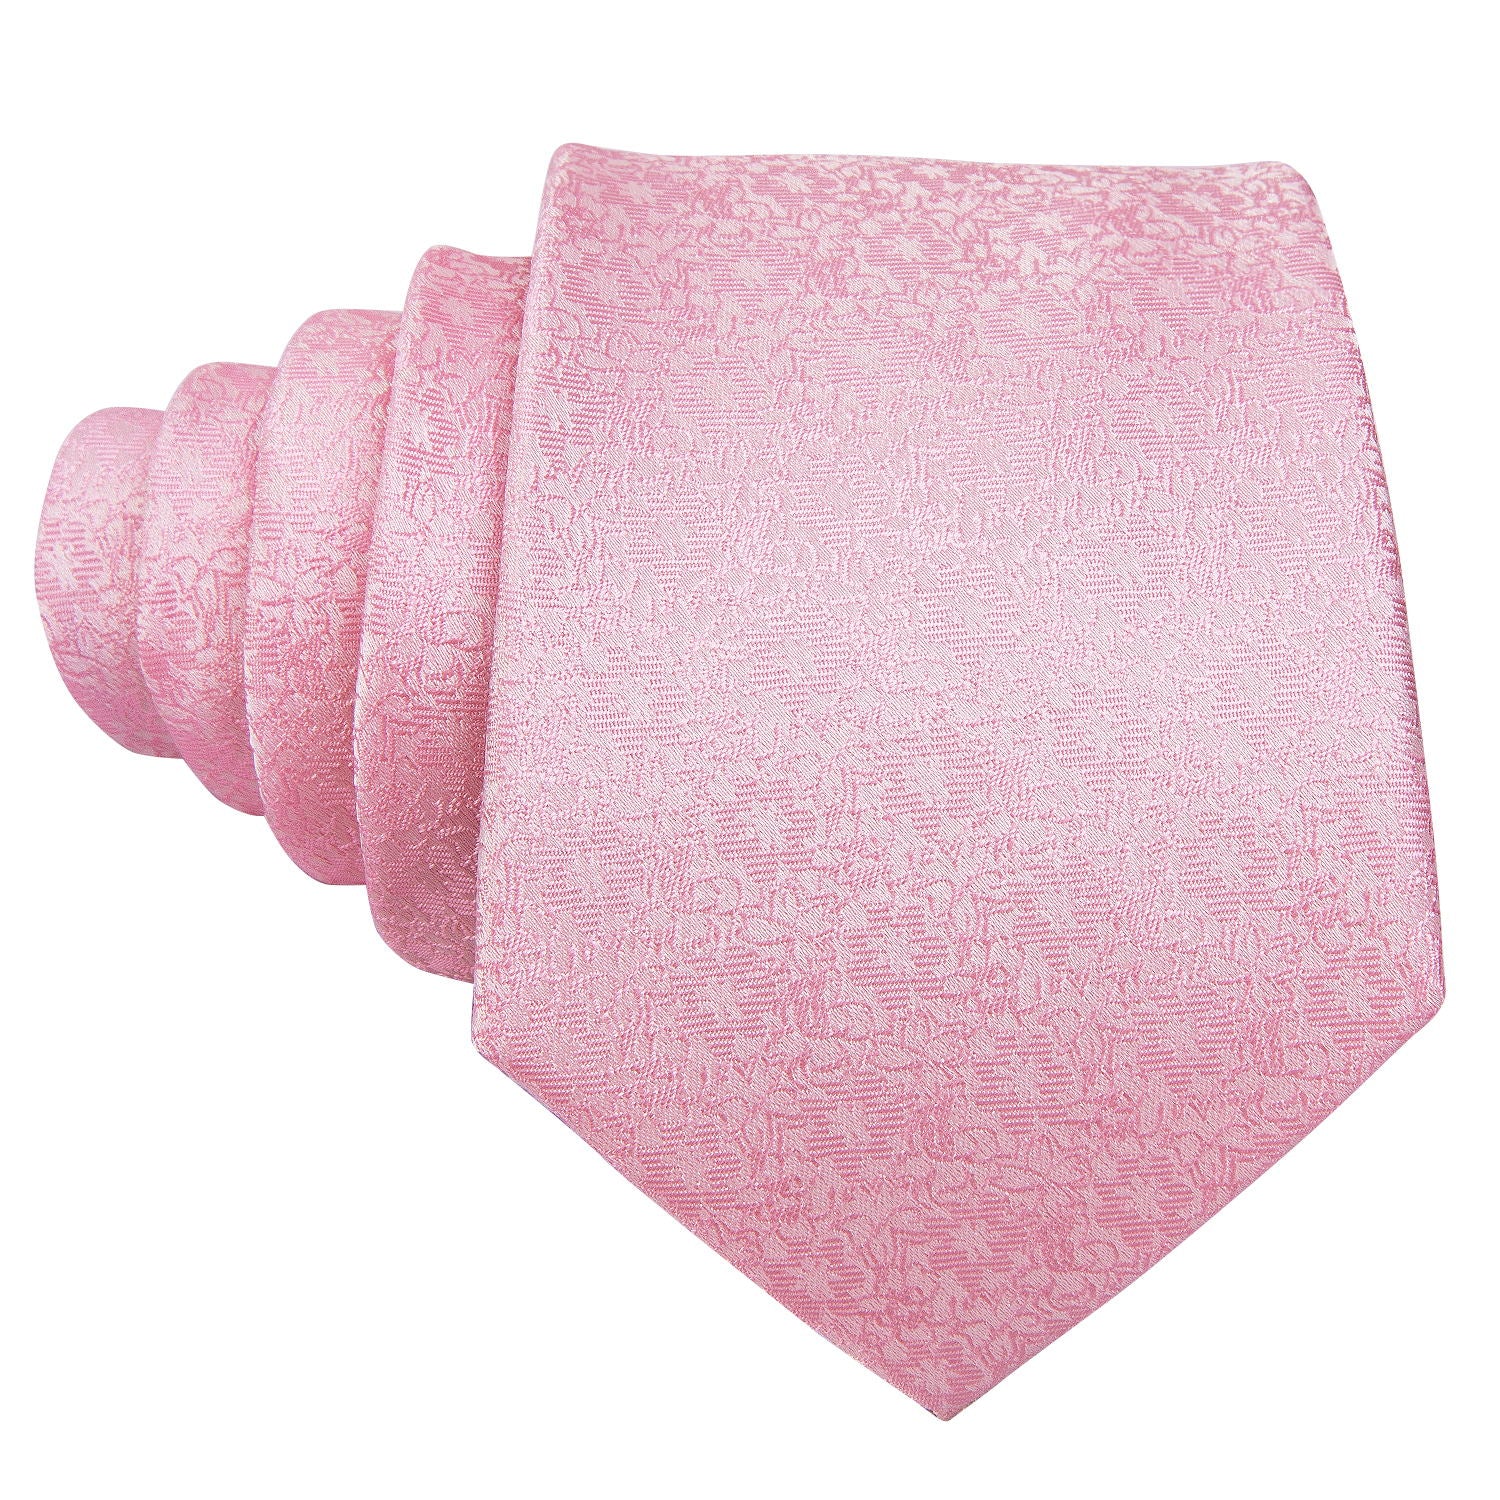 Silver Pink Floral Men's Tie Pocket Square Cufflinks Set